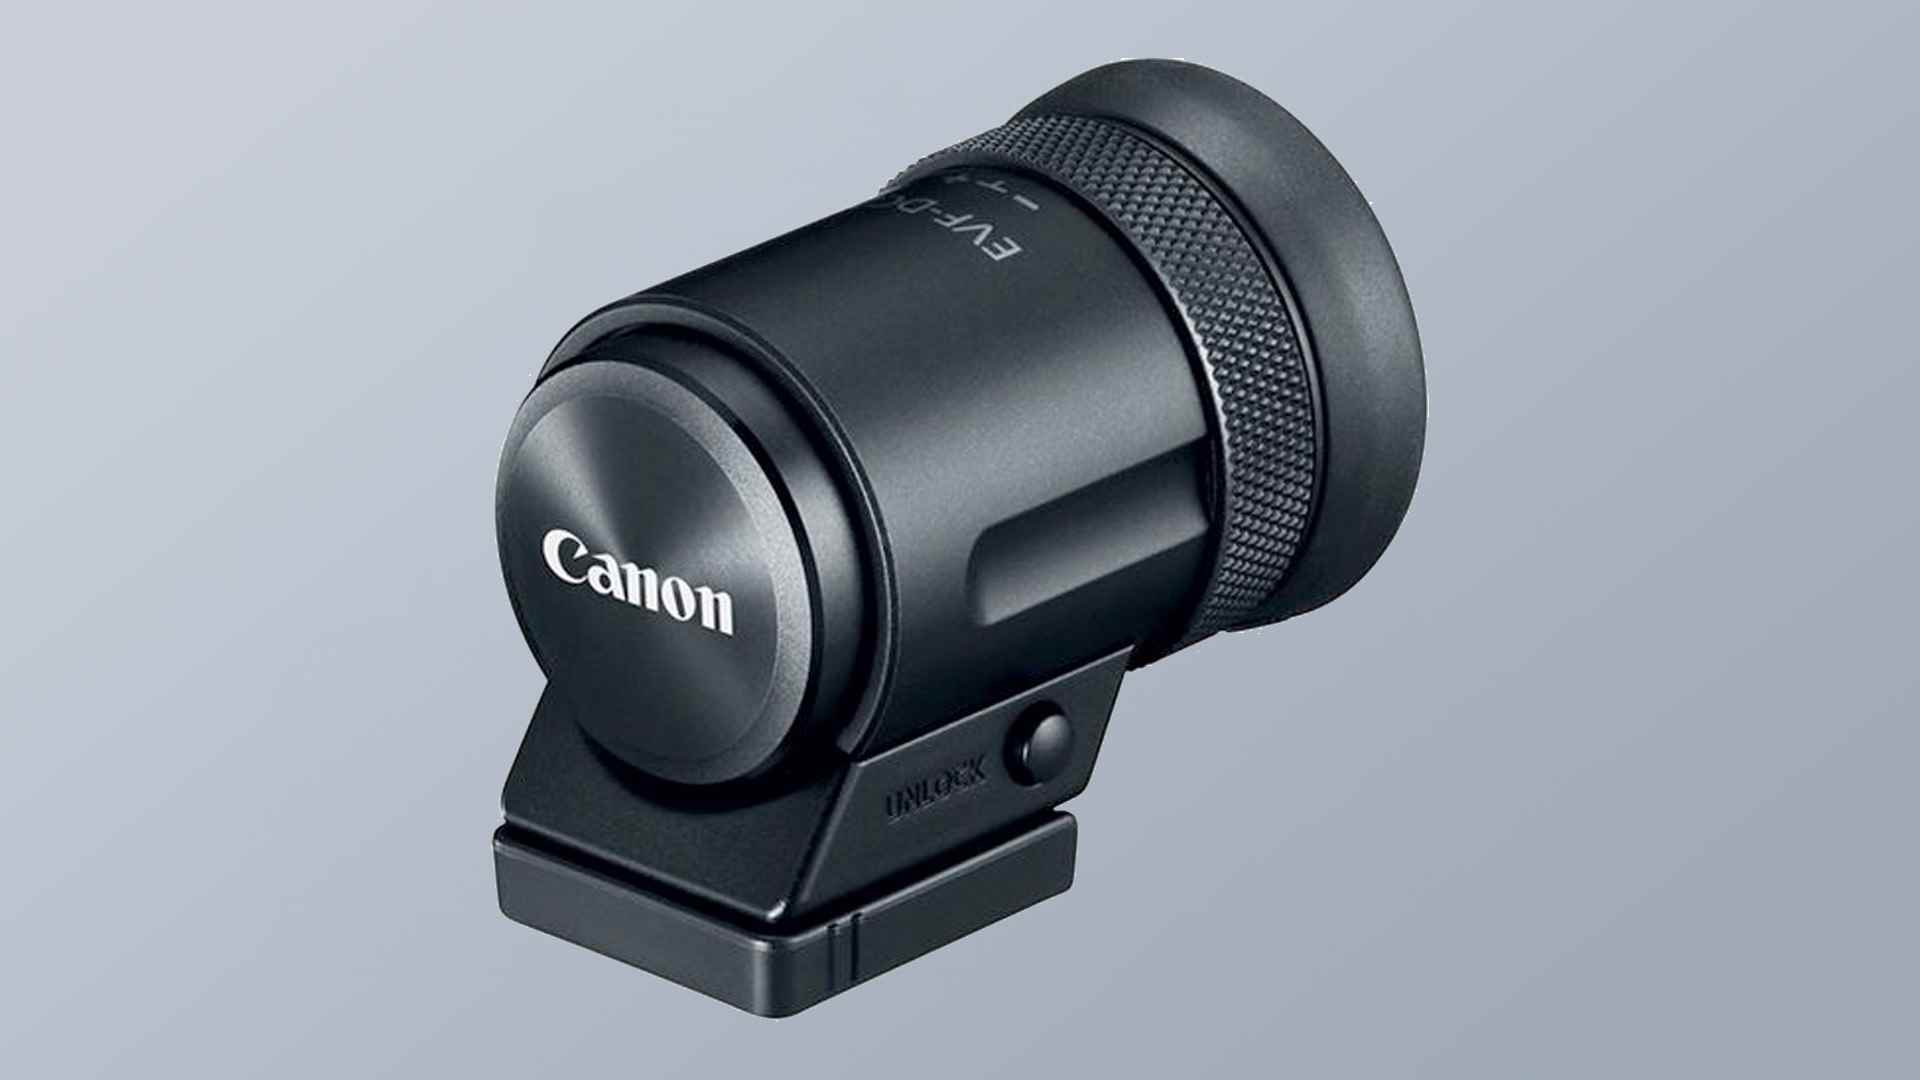 Söylentilere göre Canon EOS R100 aynasız fotoğraf makinesinin sahte bir görüntüsü